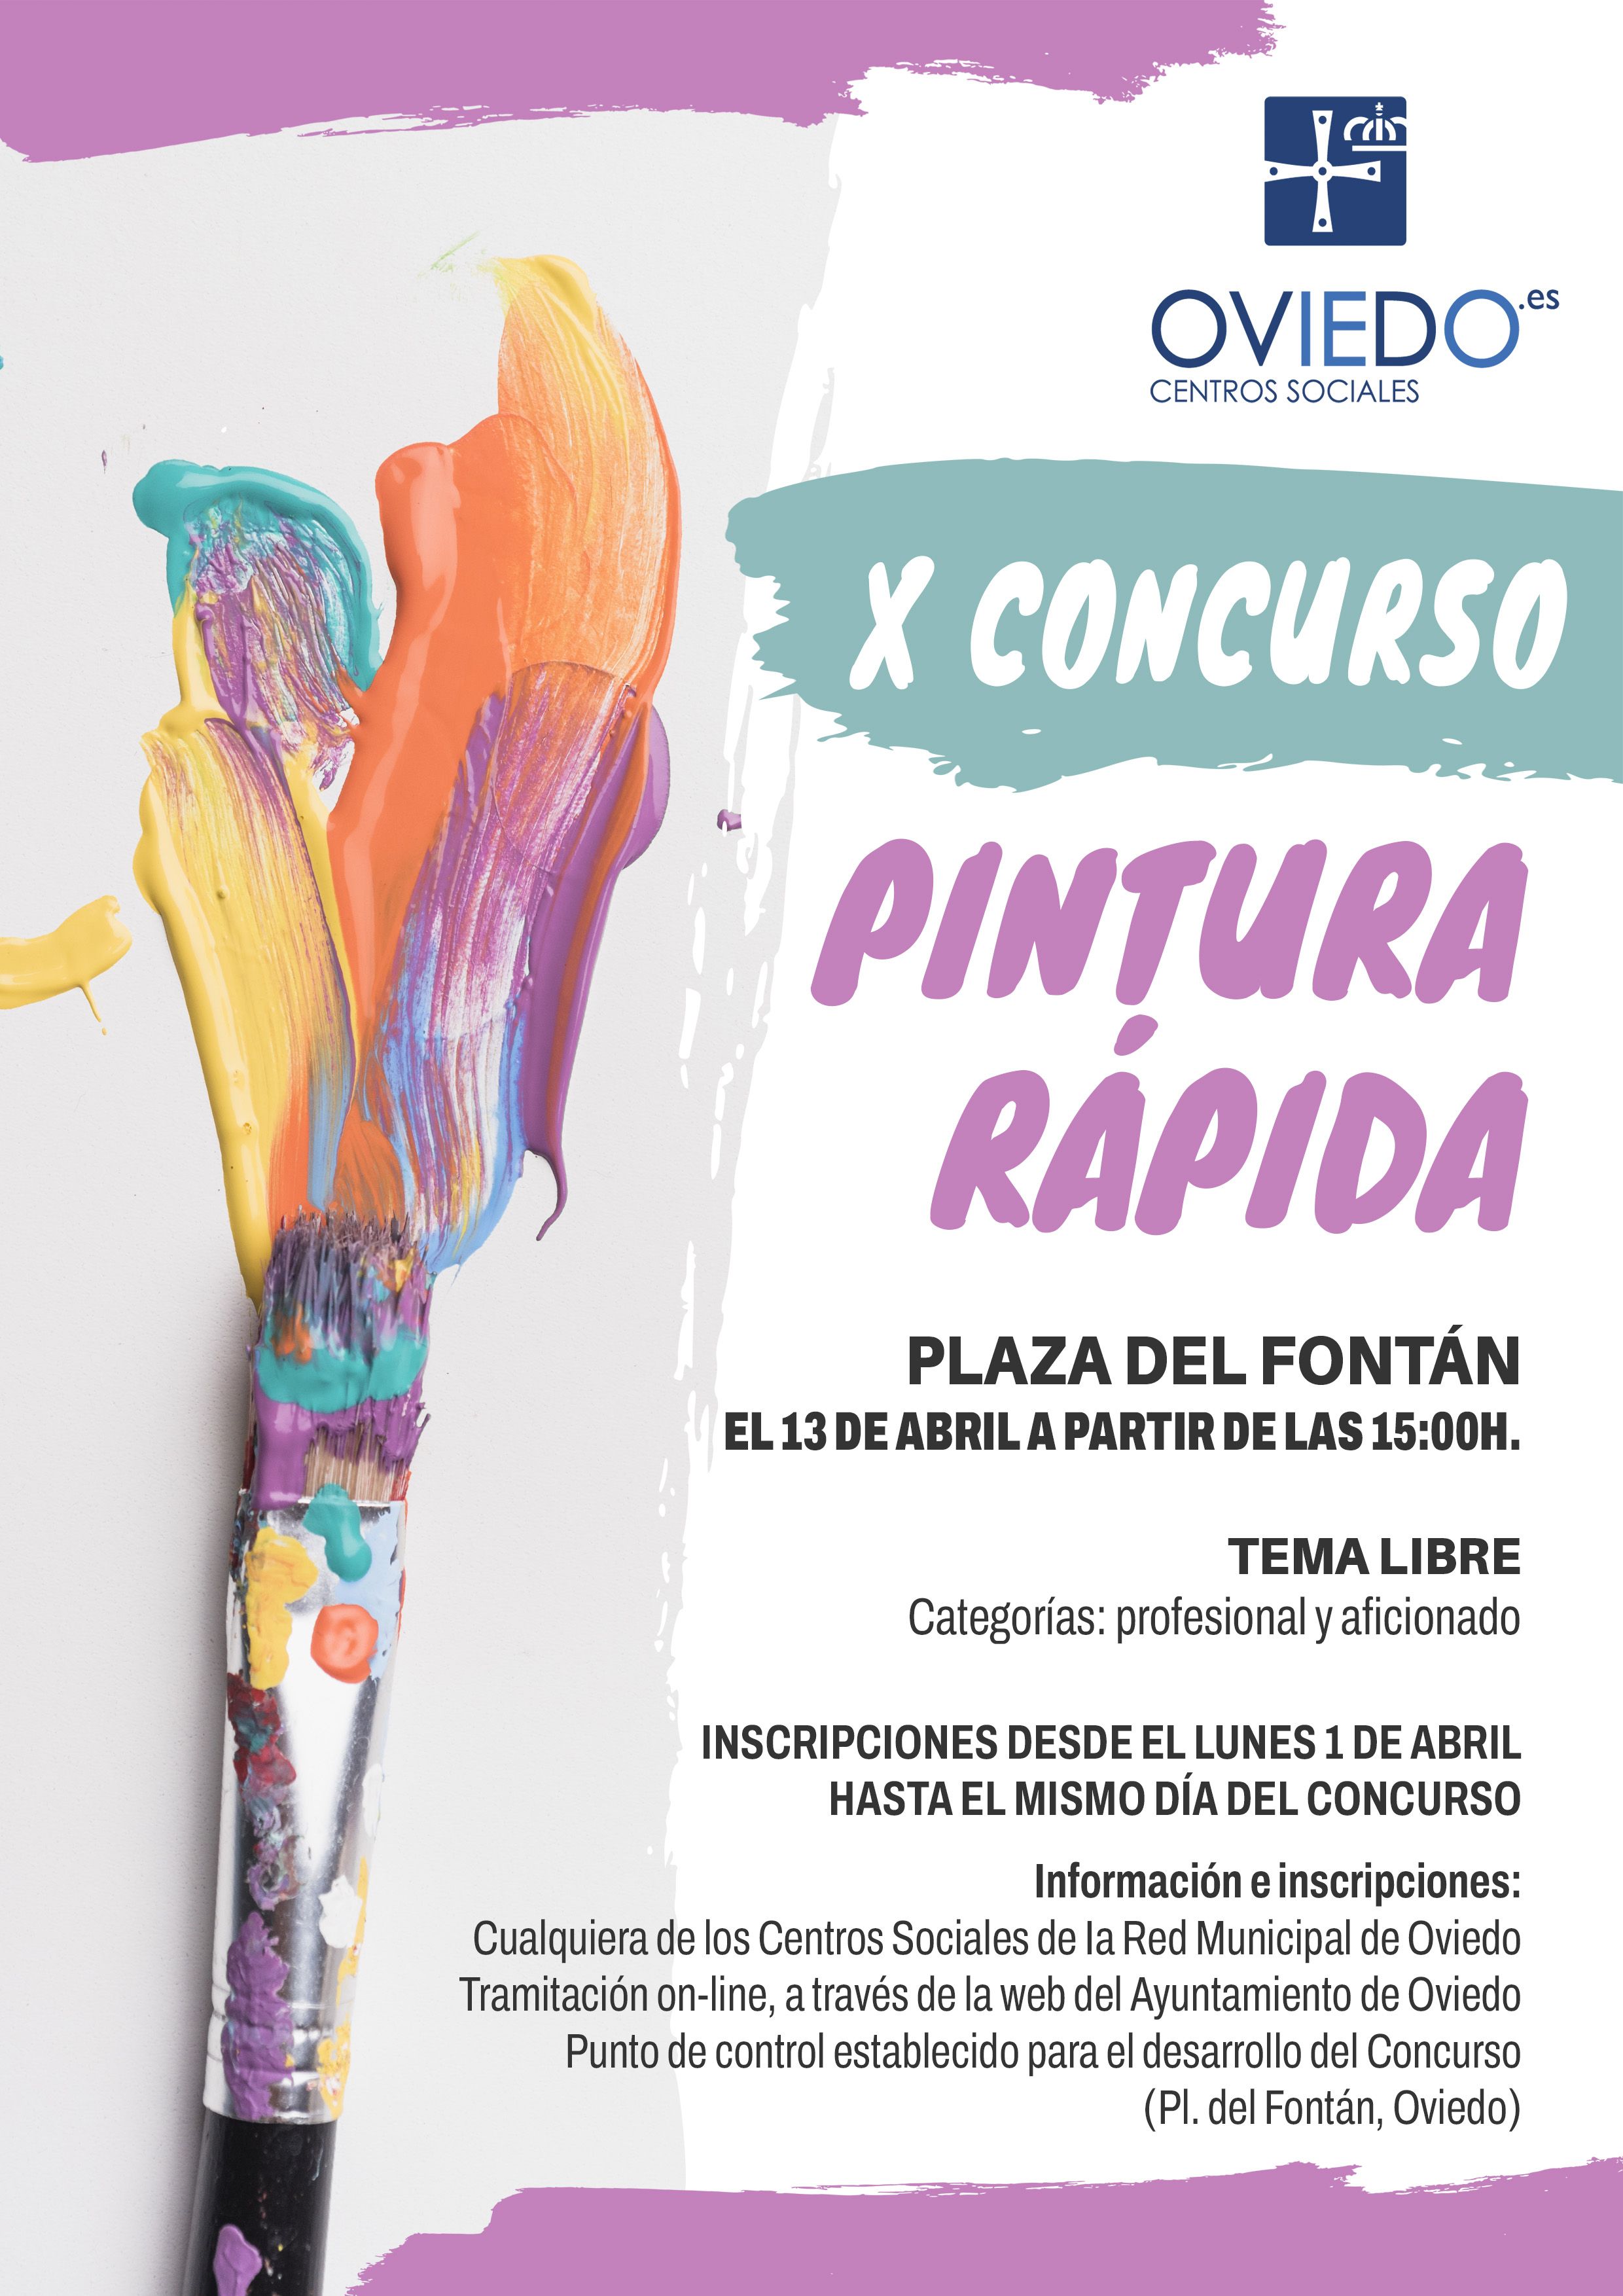 X Concurso de pintura rápida al aire libre ciudad de Oviedo